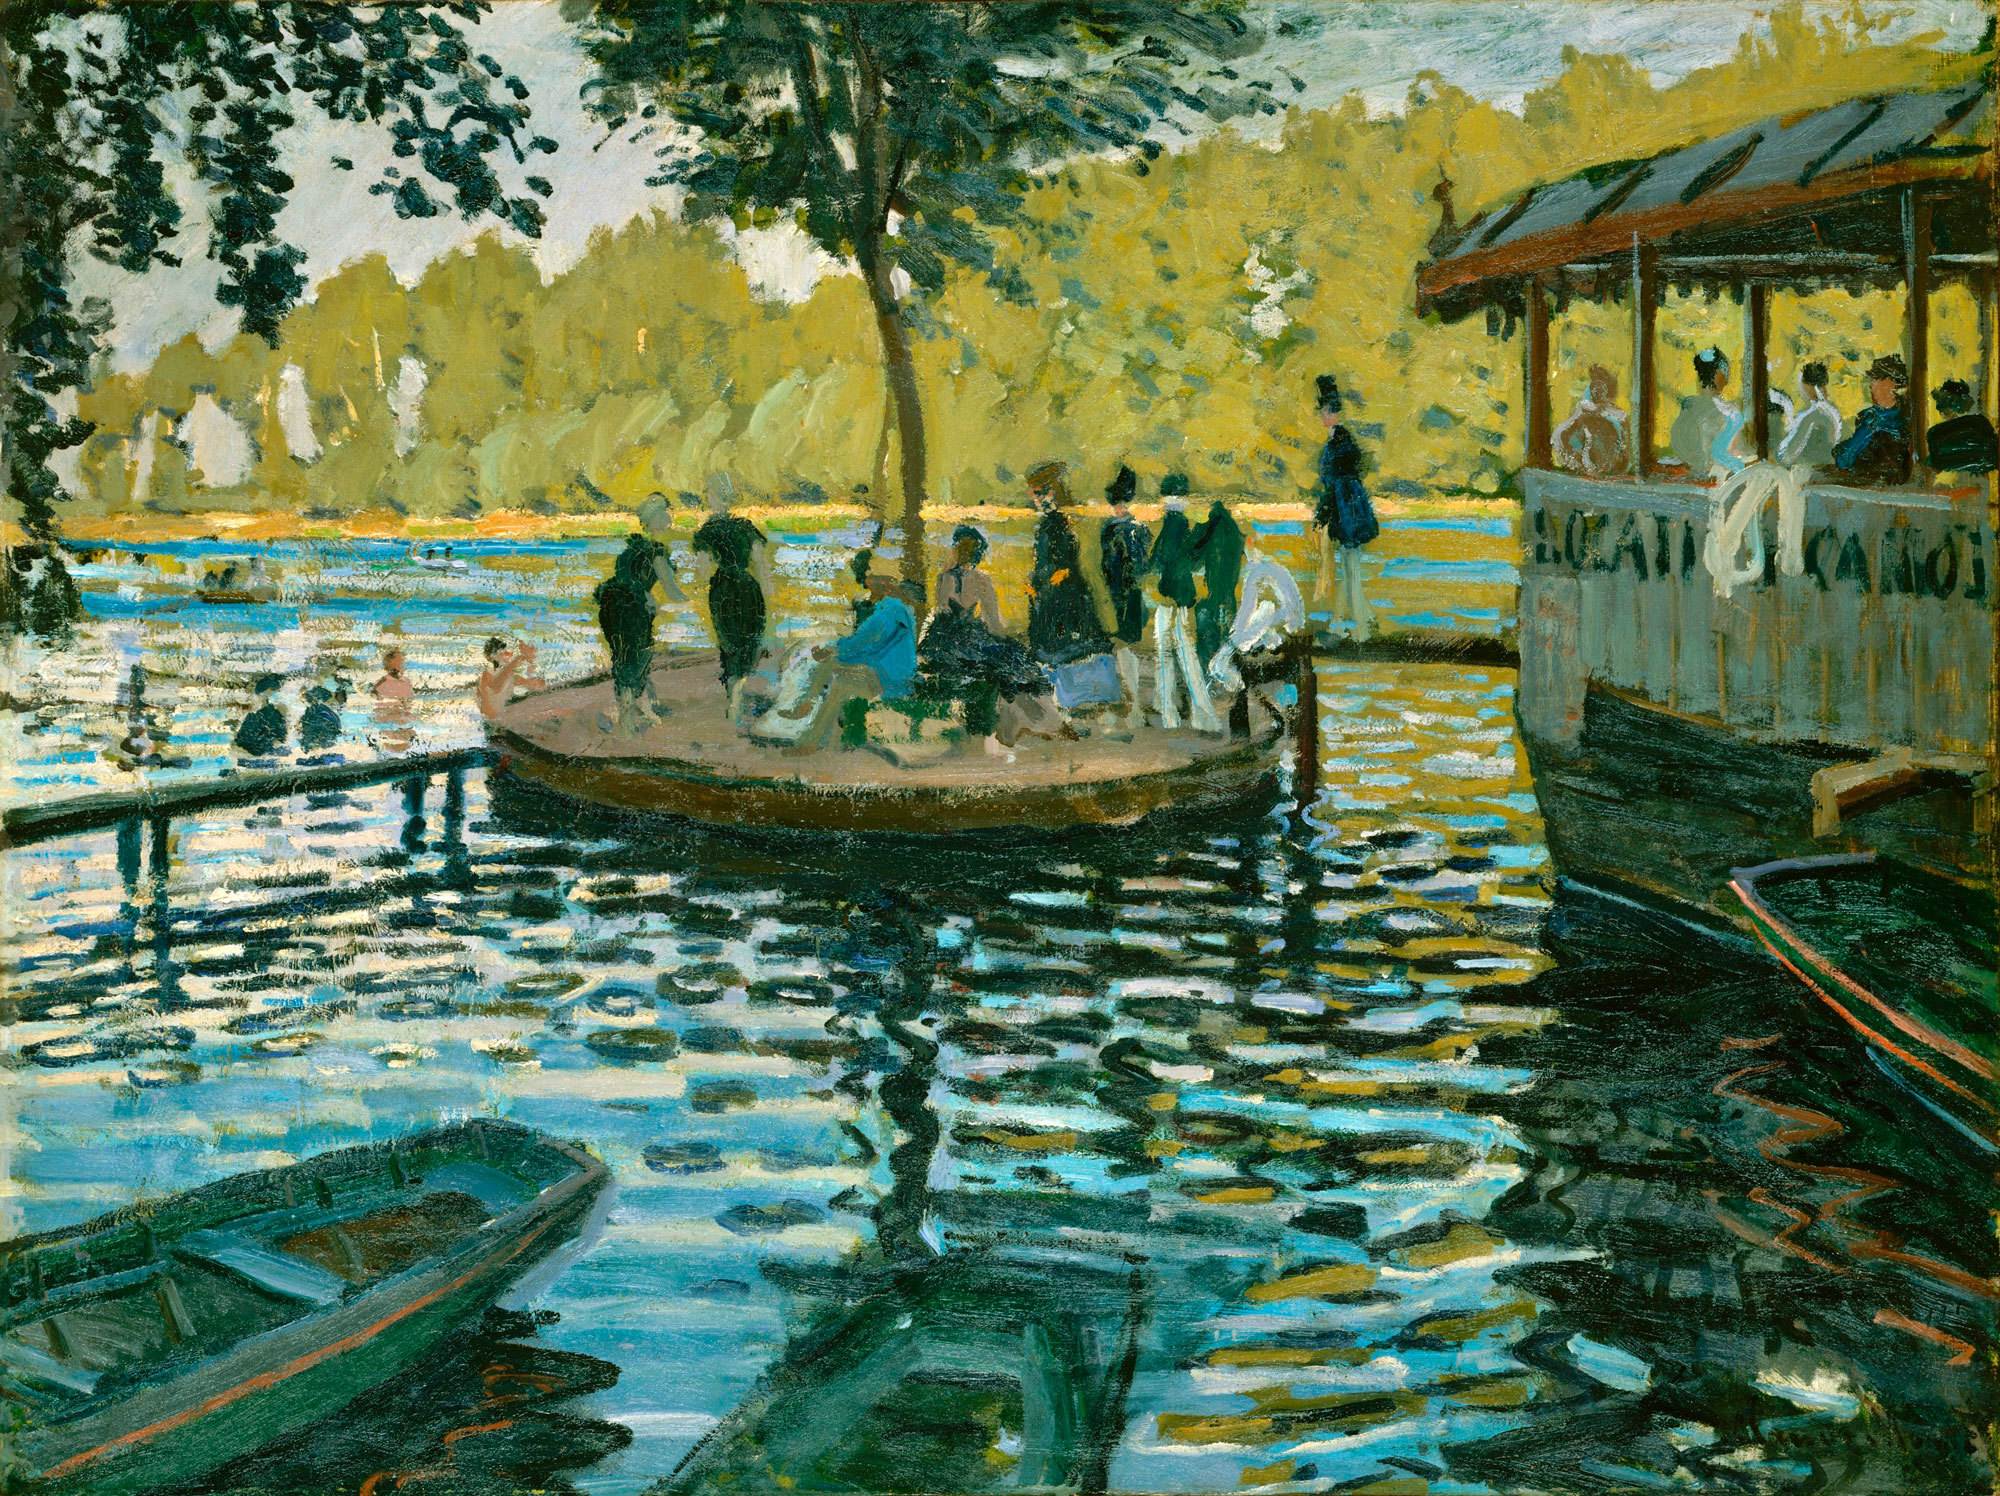 Claude Monet - La Grenouillére, 1869